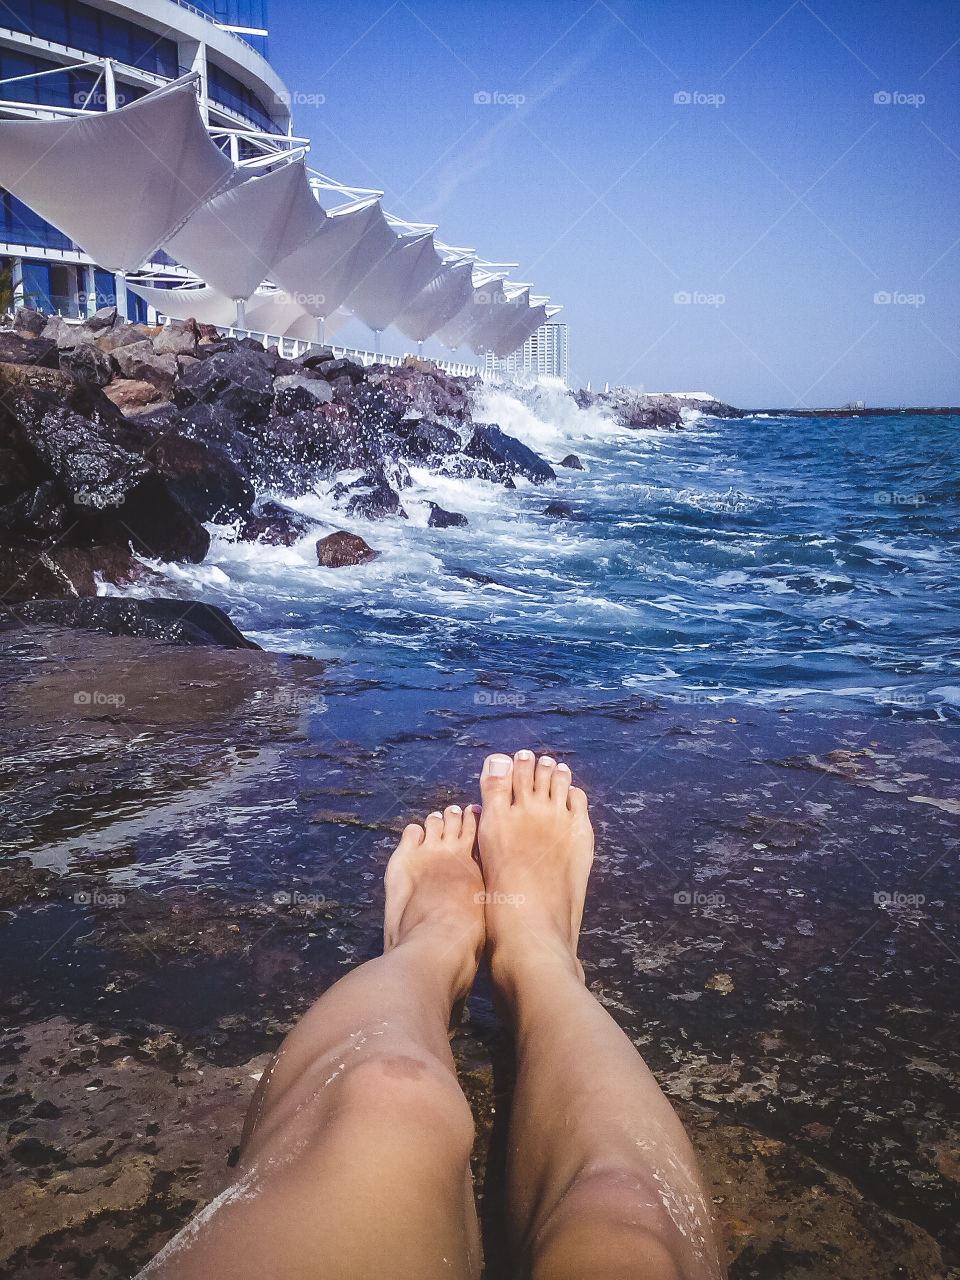 A person's feet at beach